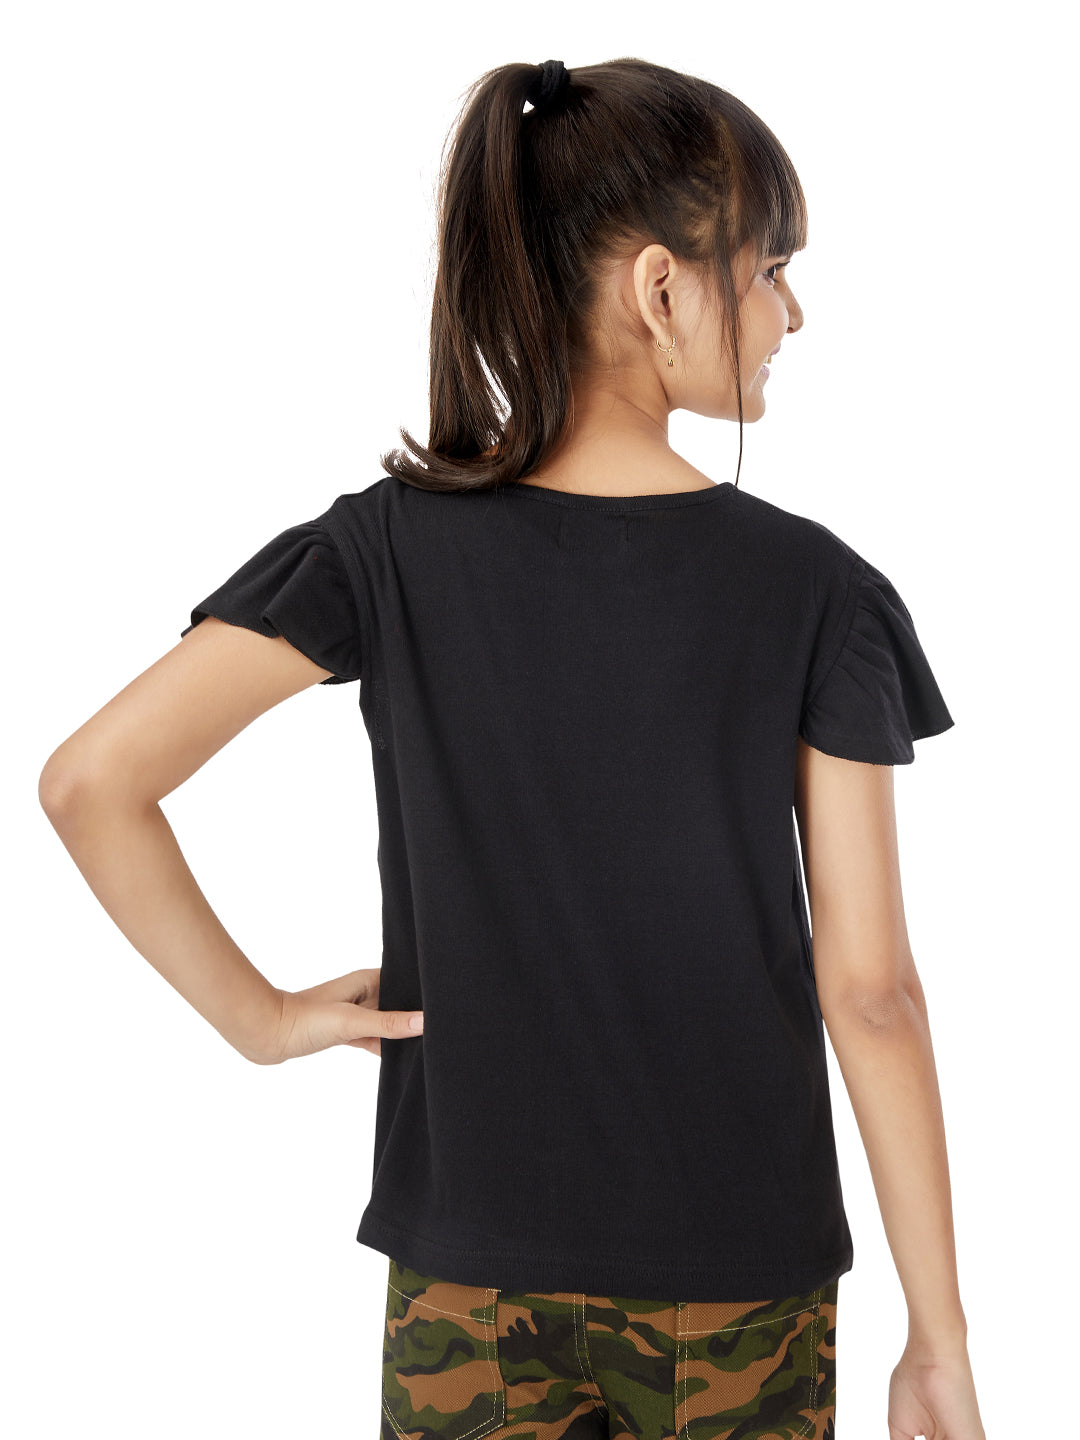 Olele® Girls Ruffle Short Sleeve Tshirt - Black